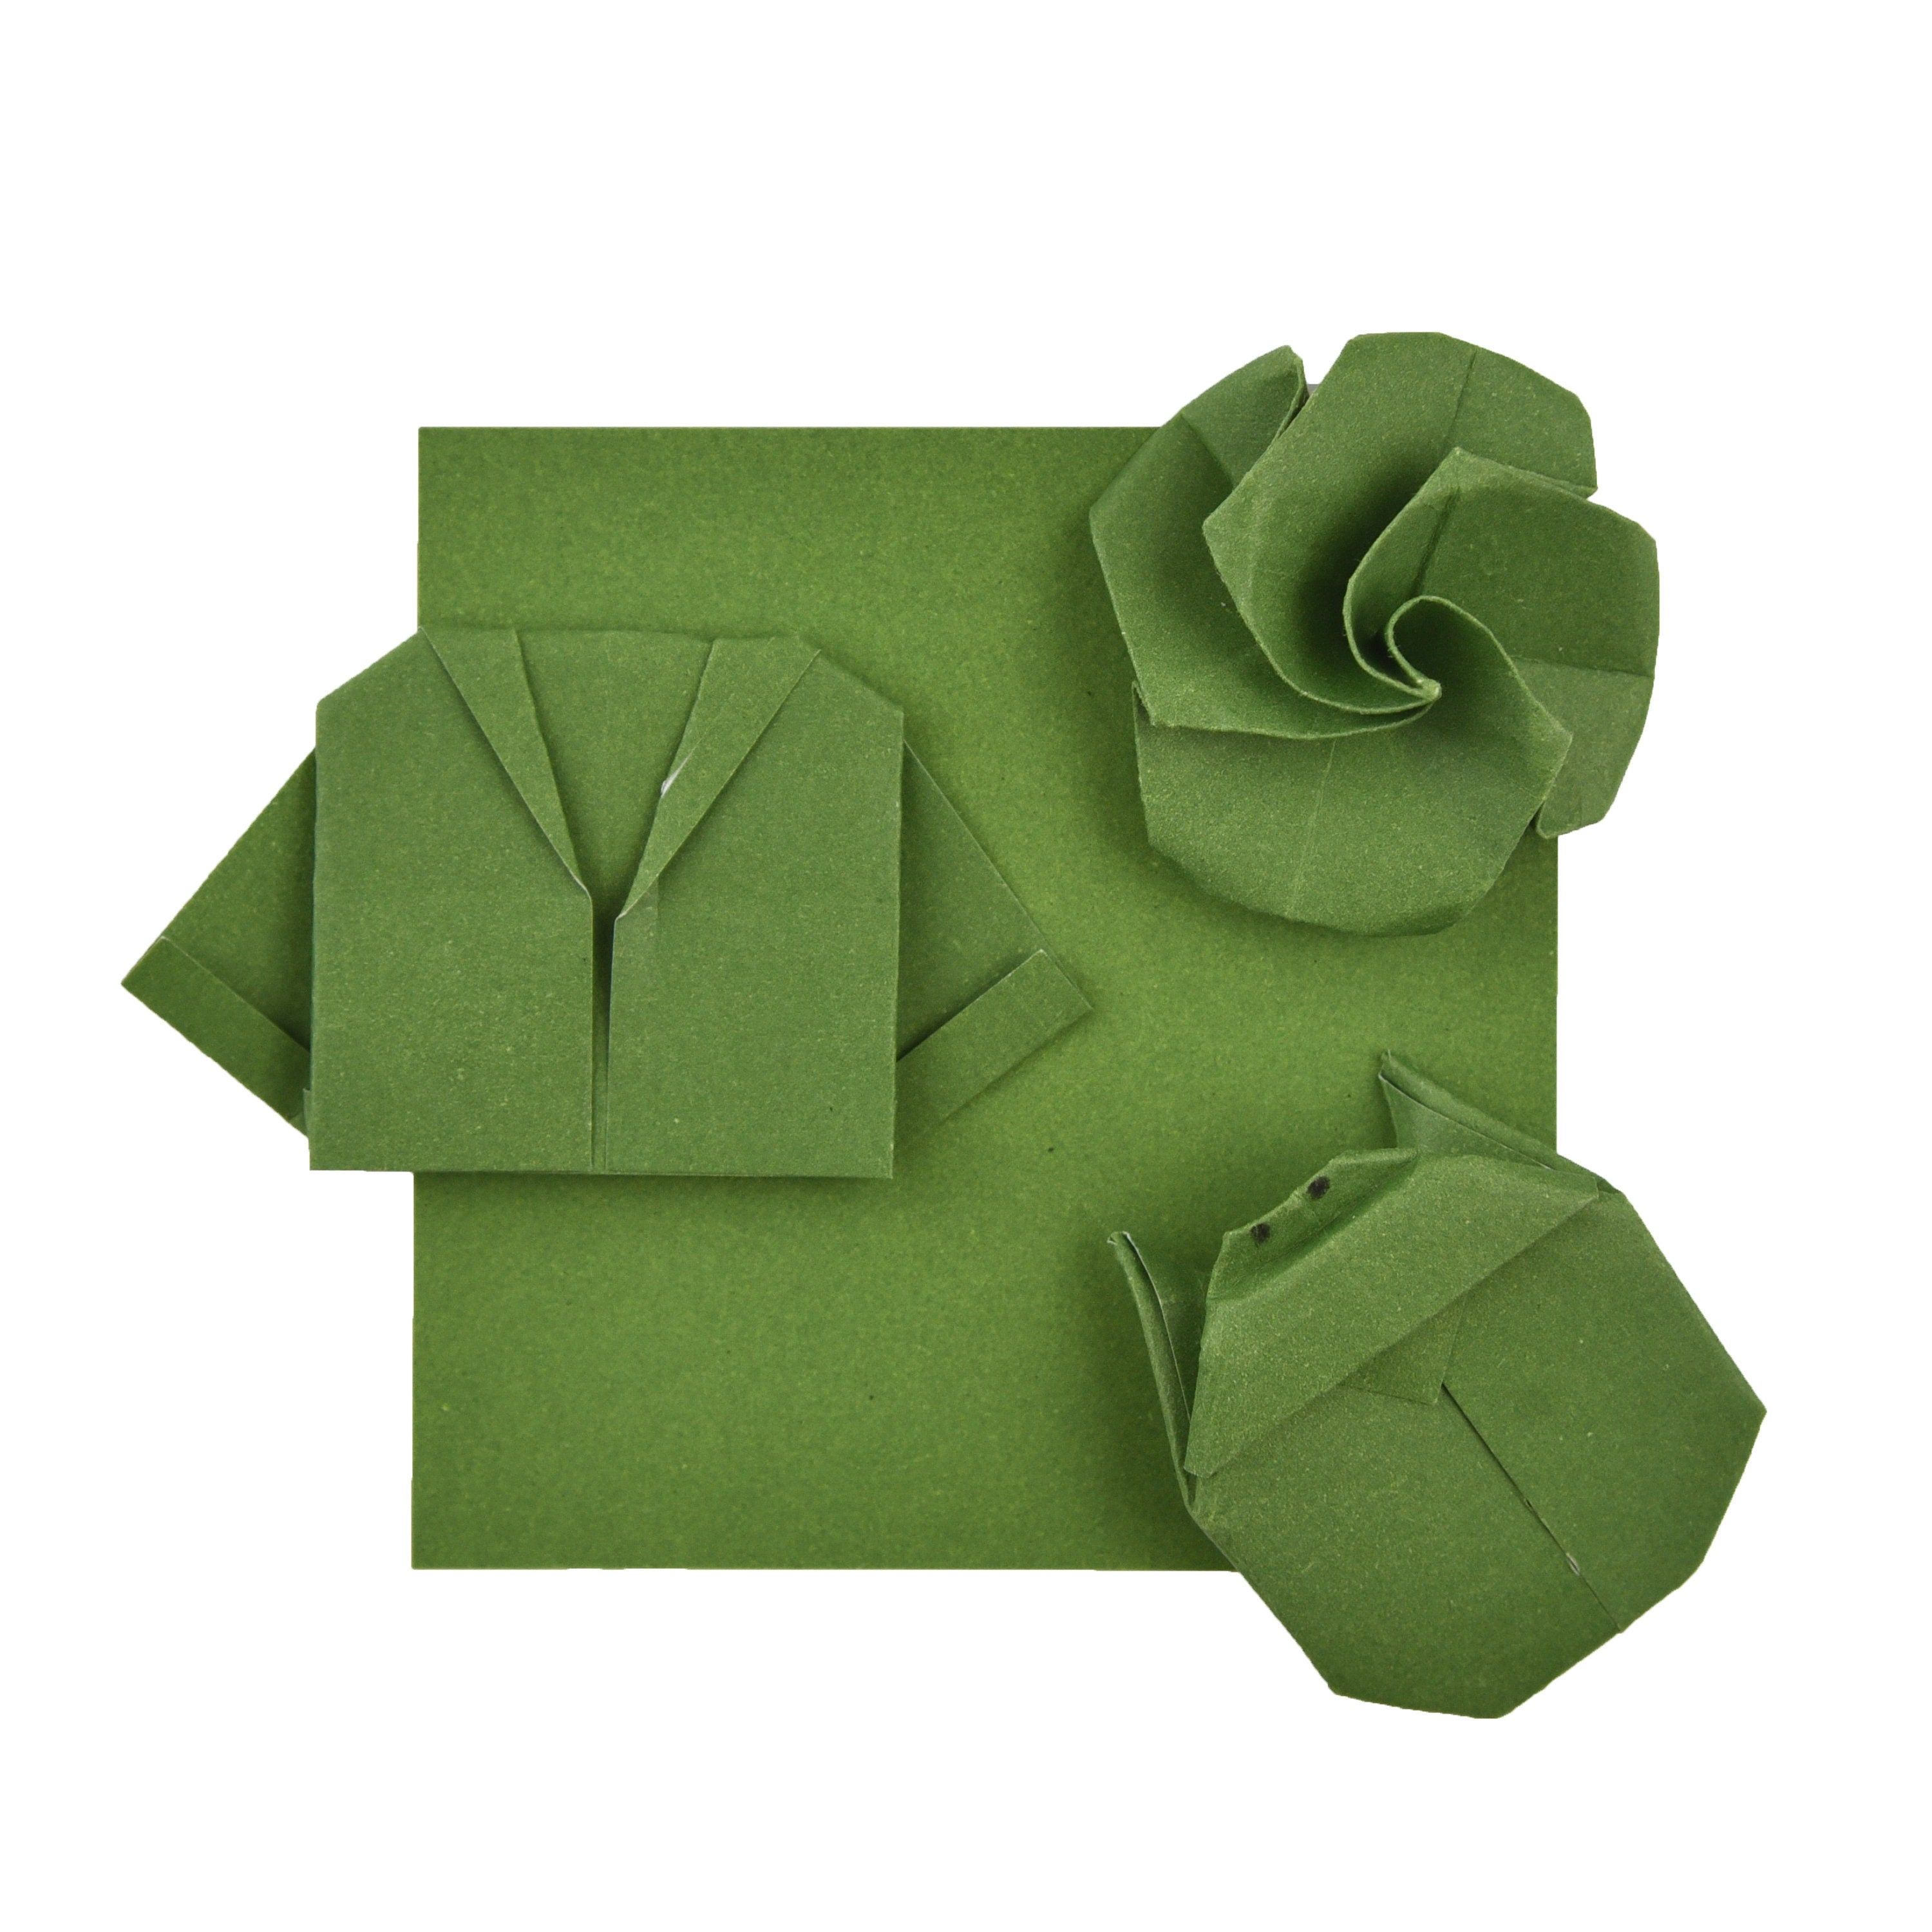 100 fogli di carta origami - 3x3 pollici - Confezione di carta quadrata per piegare, gru origami e decorazioni - S23